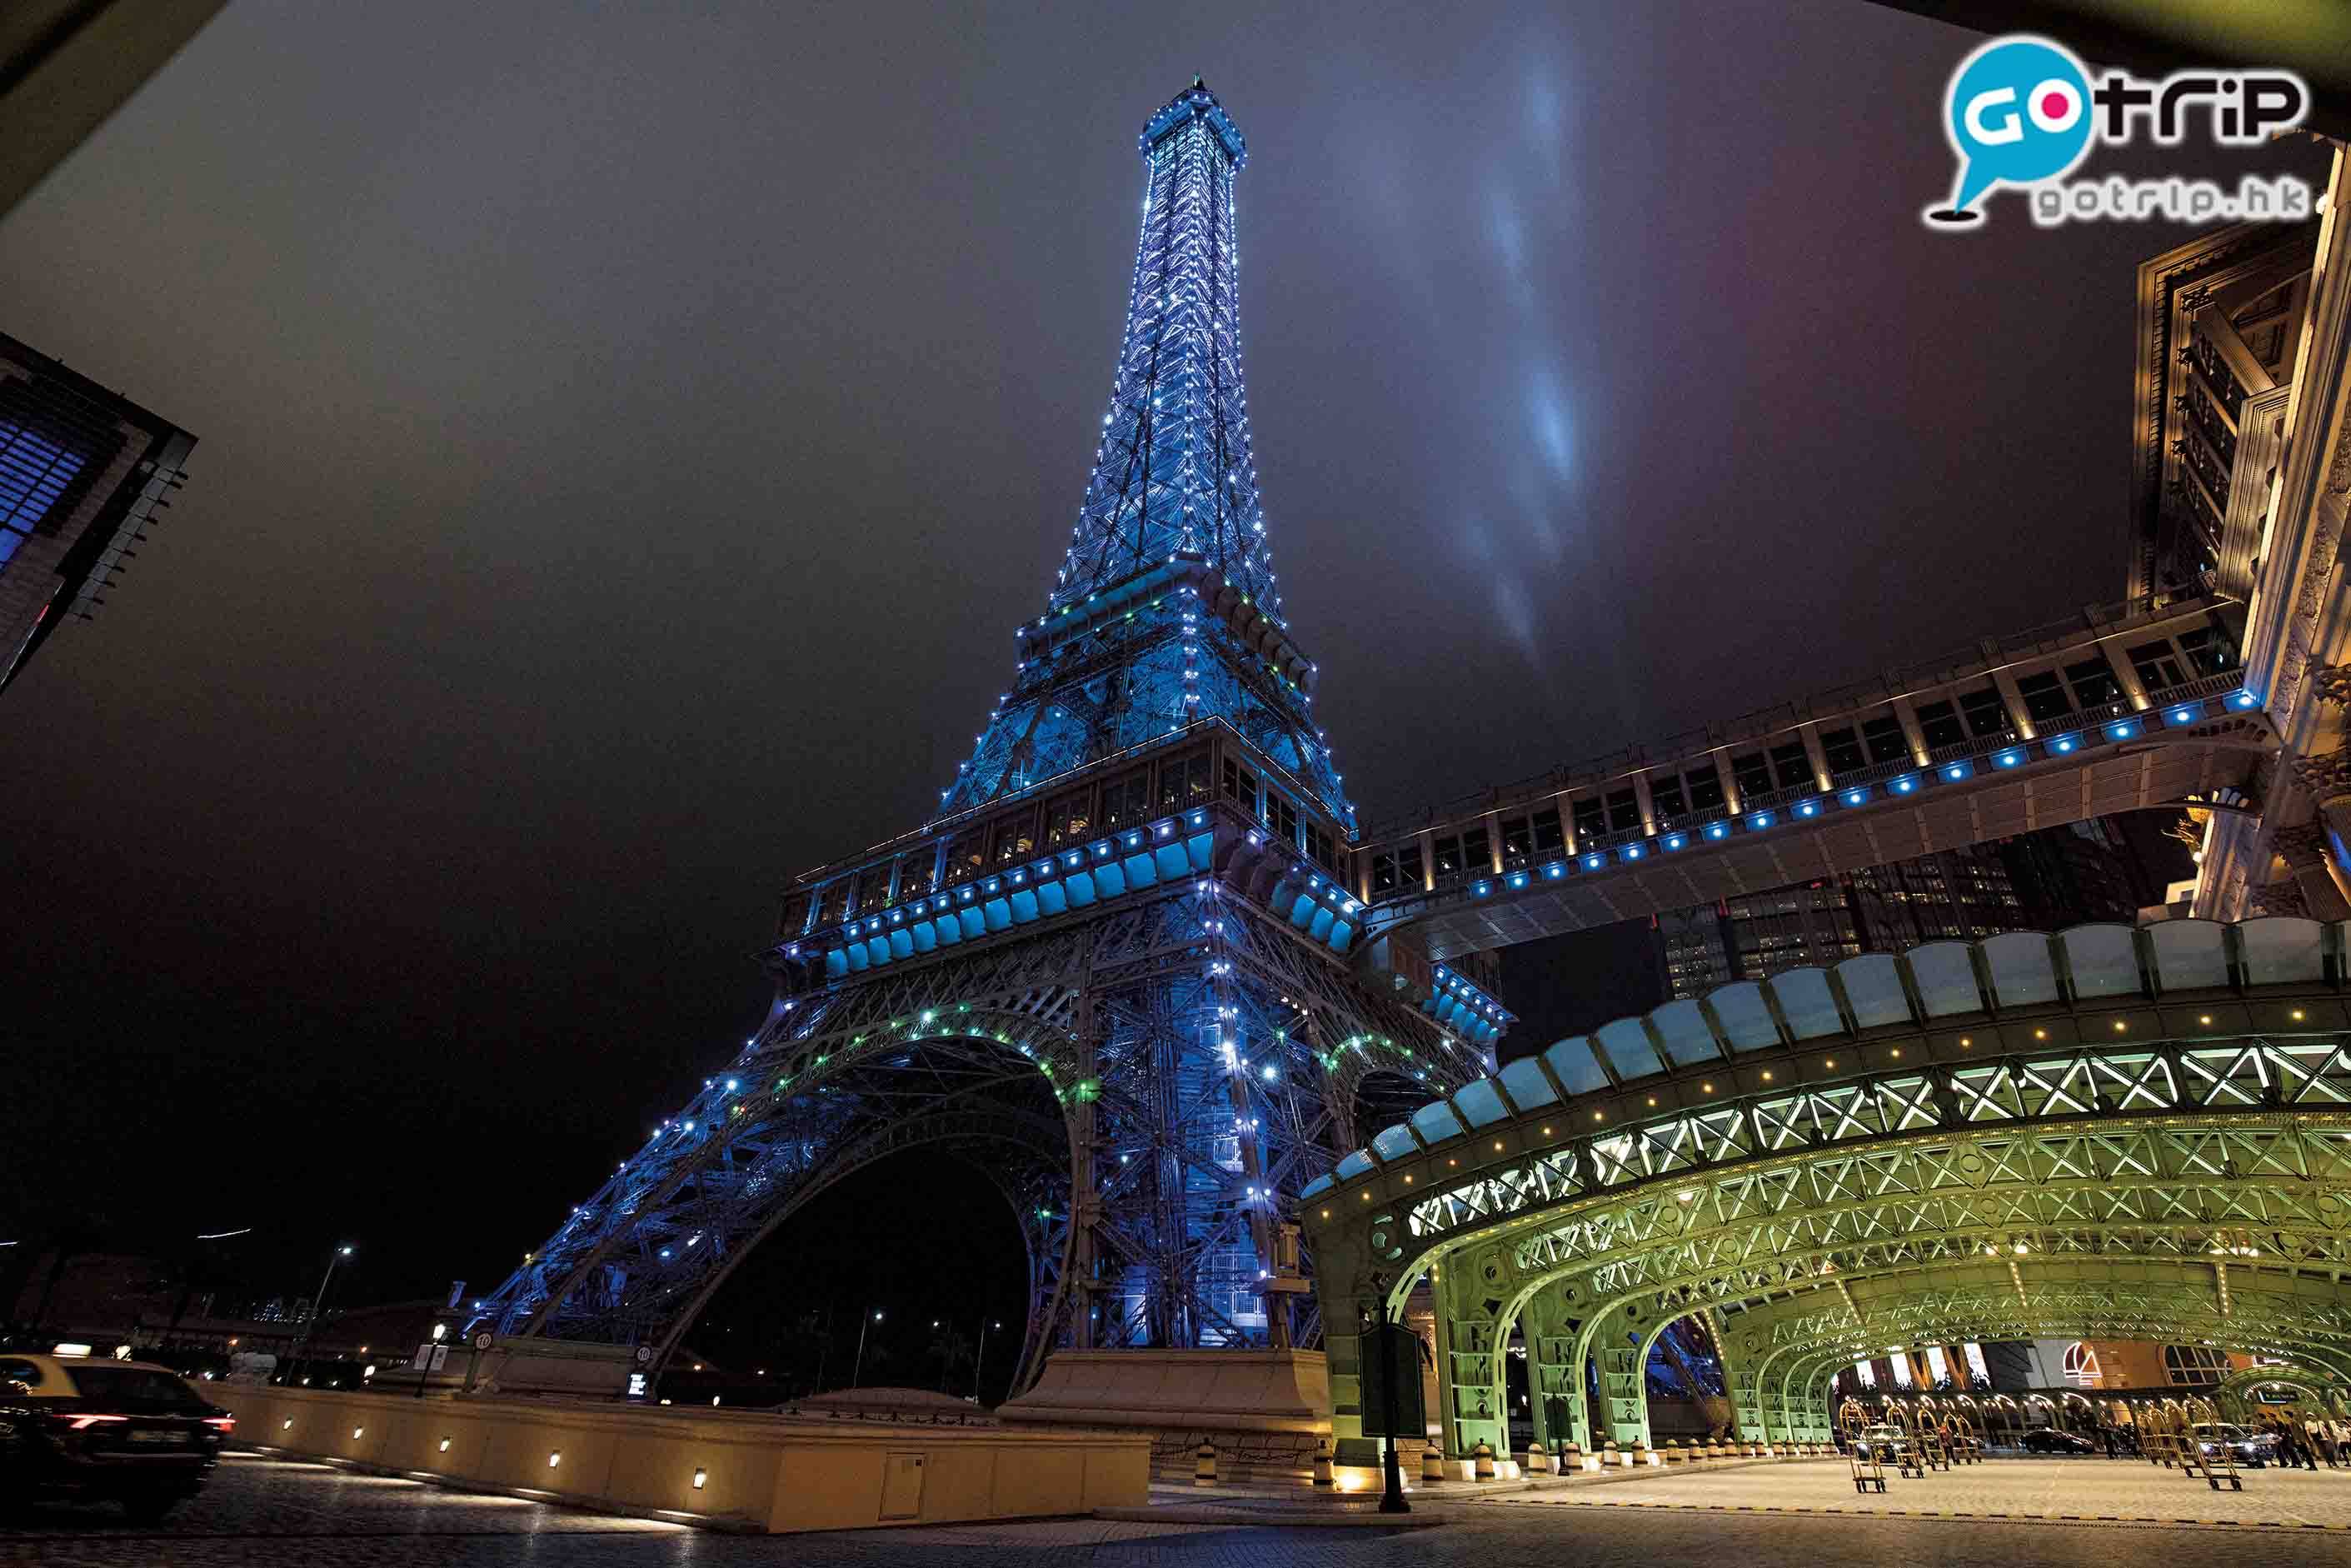 澳門自助餐2019 吃完晚餐，可到澳門巴黎鐵塔欣賞燈飾，打卡留念。